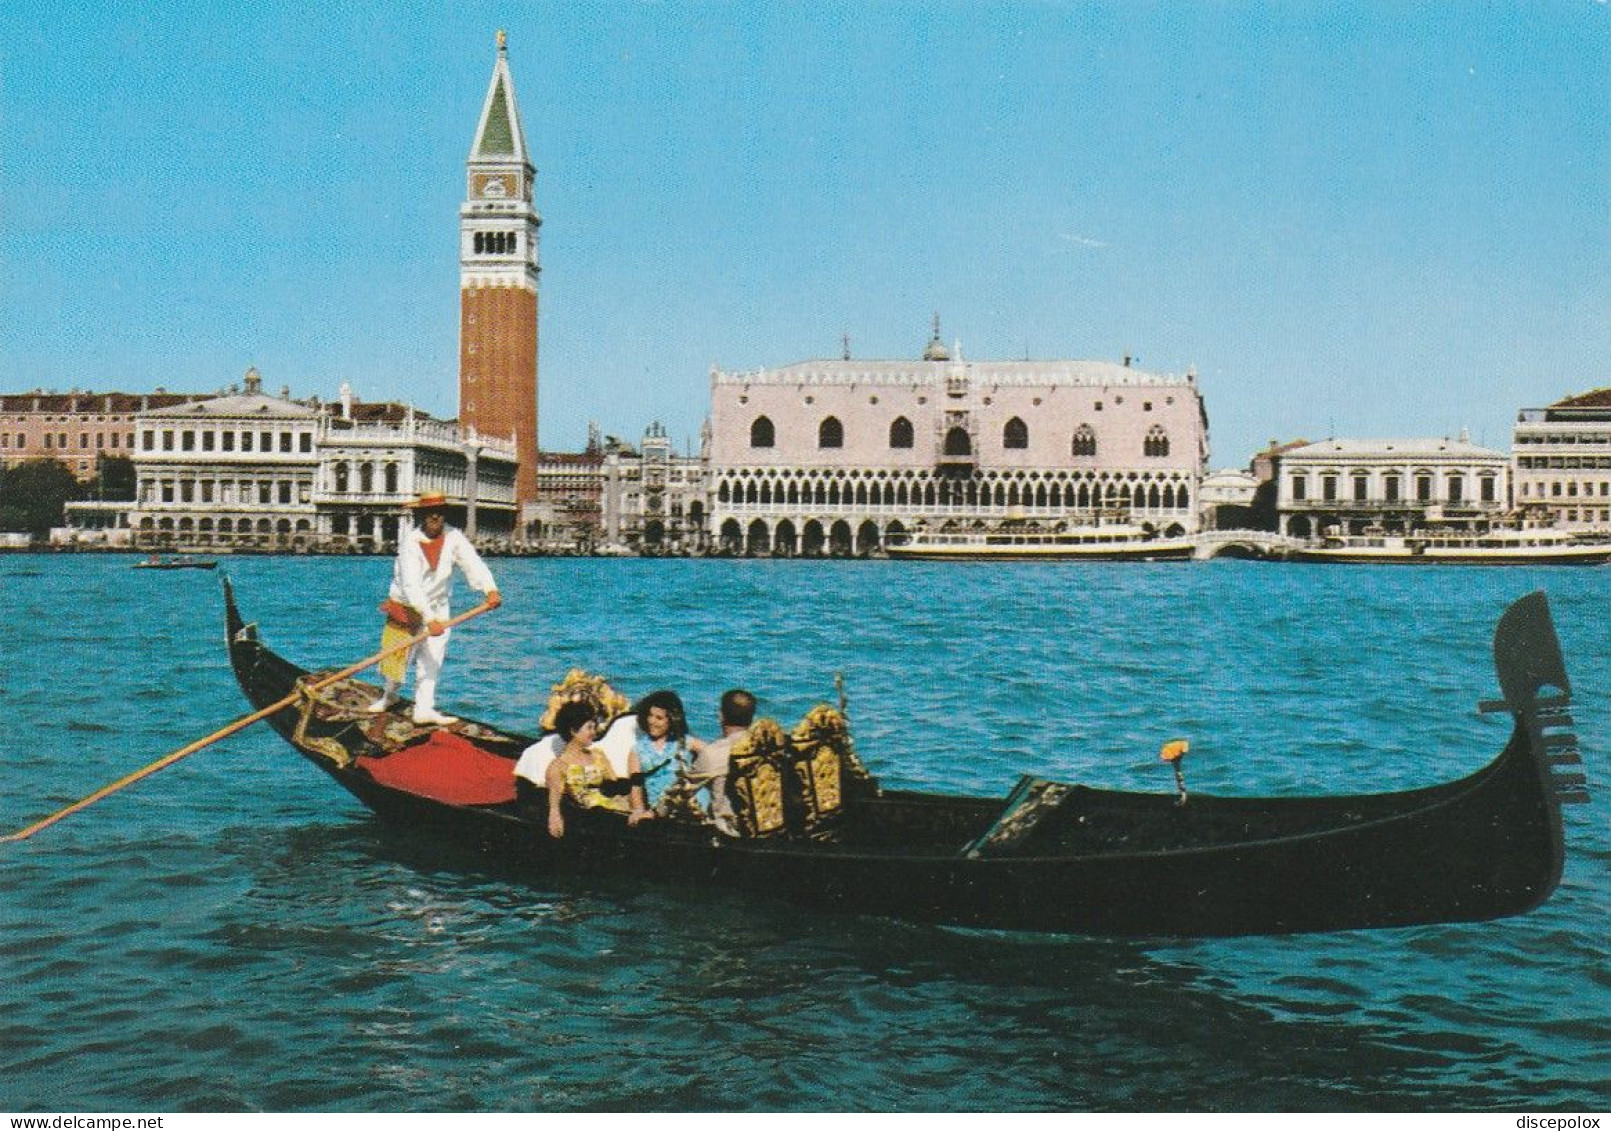 U6085 Venezia - Panorama Del Bacino Di San Marco - Gondola Gondole / Non Viaggiata - Venezia (Venice)